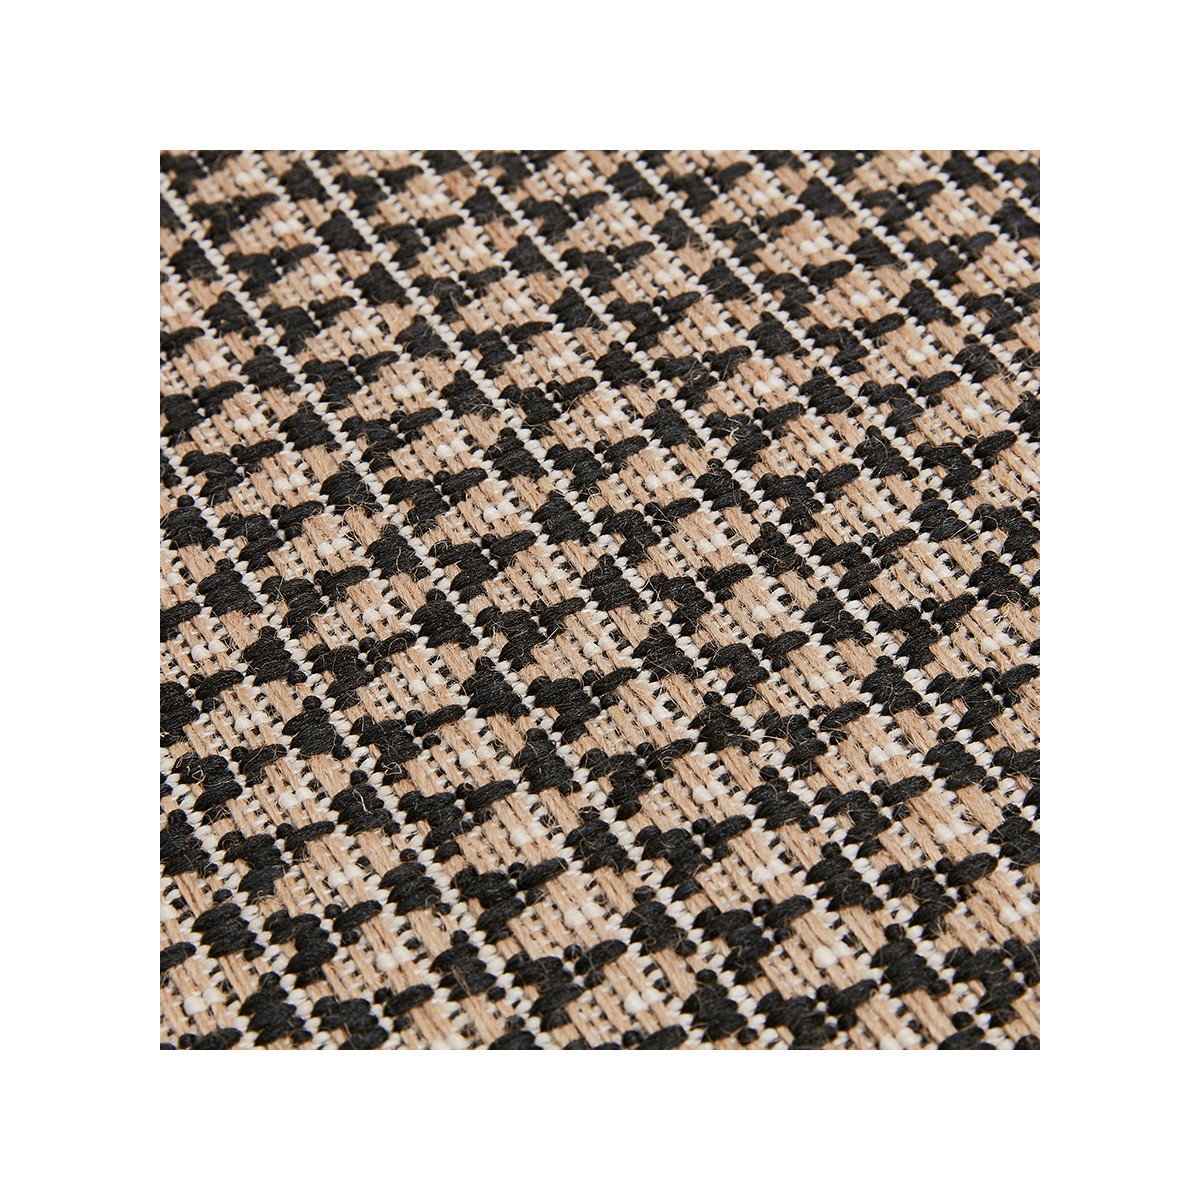 Descubra alfombras en 160x230 cm en muchos estilos